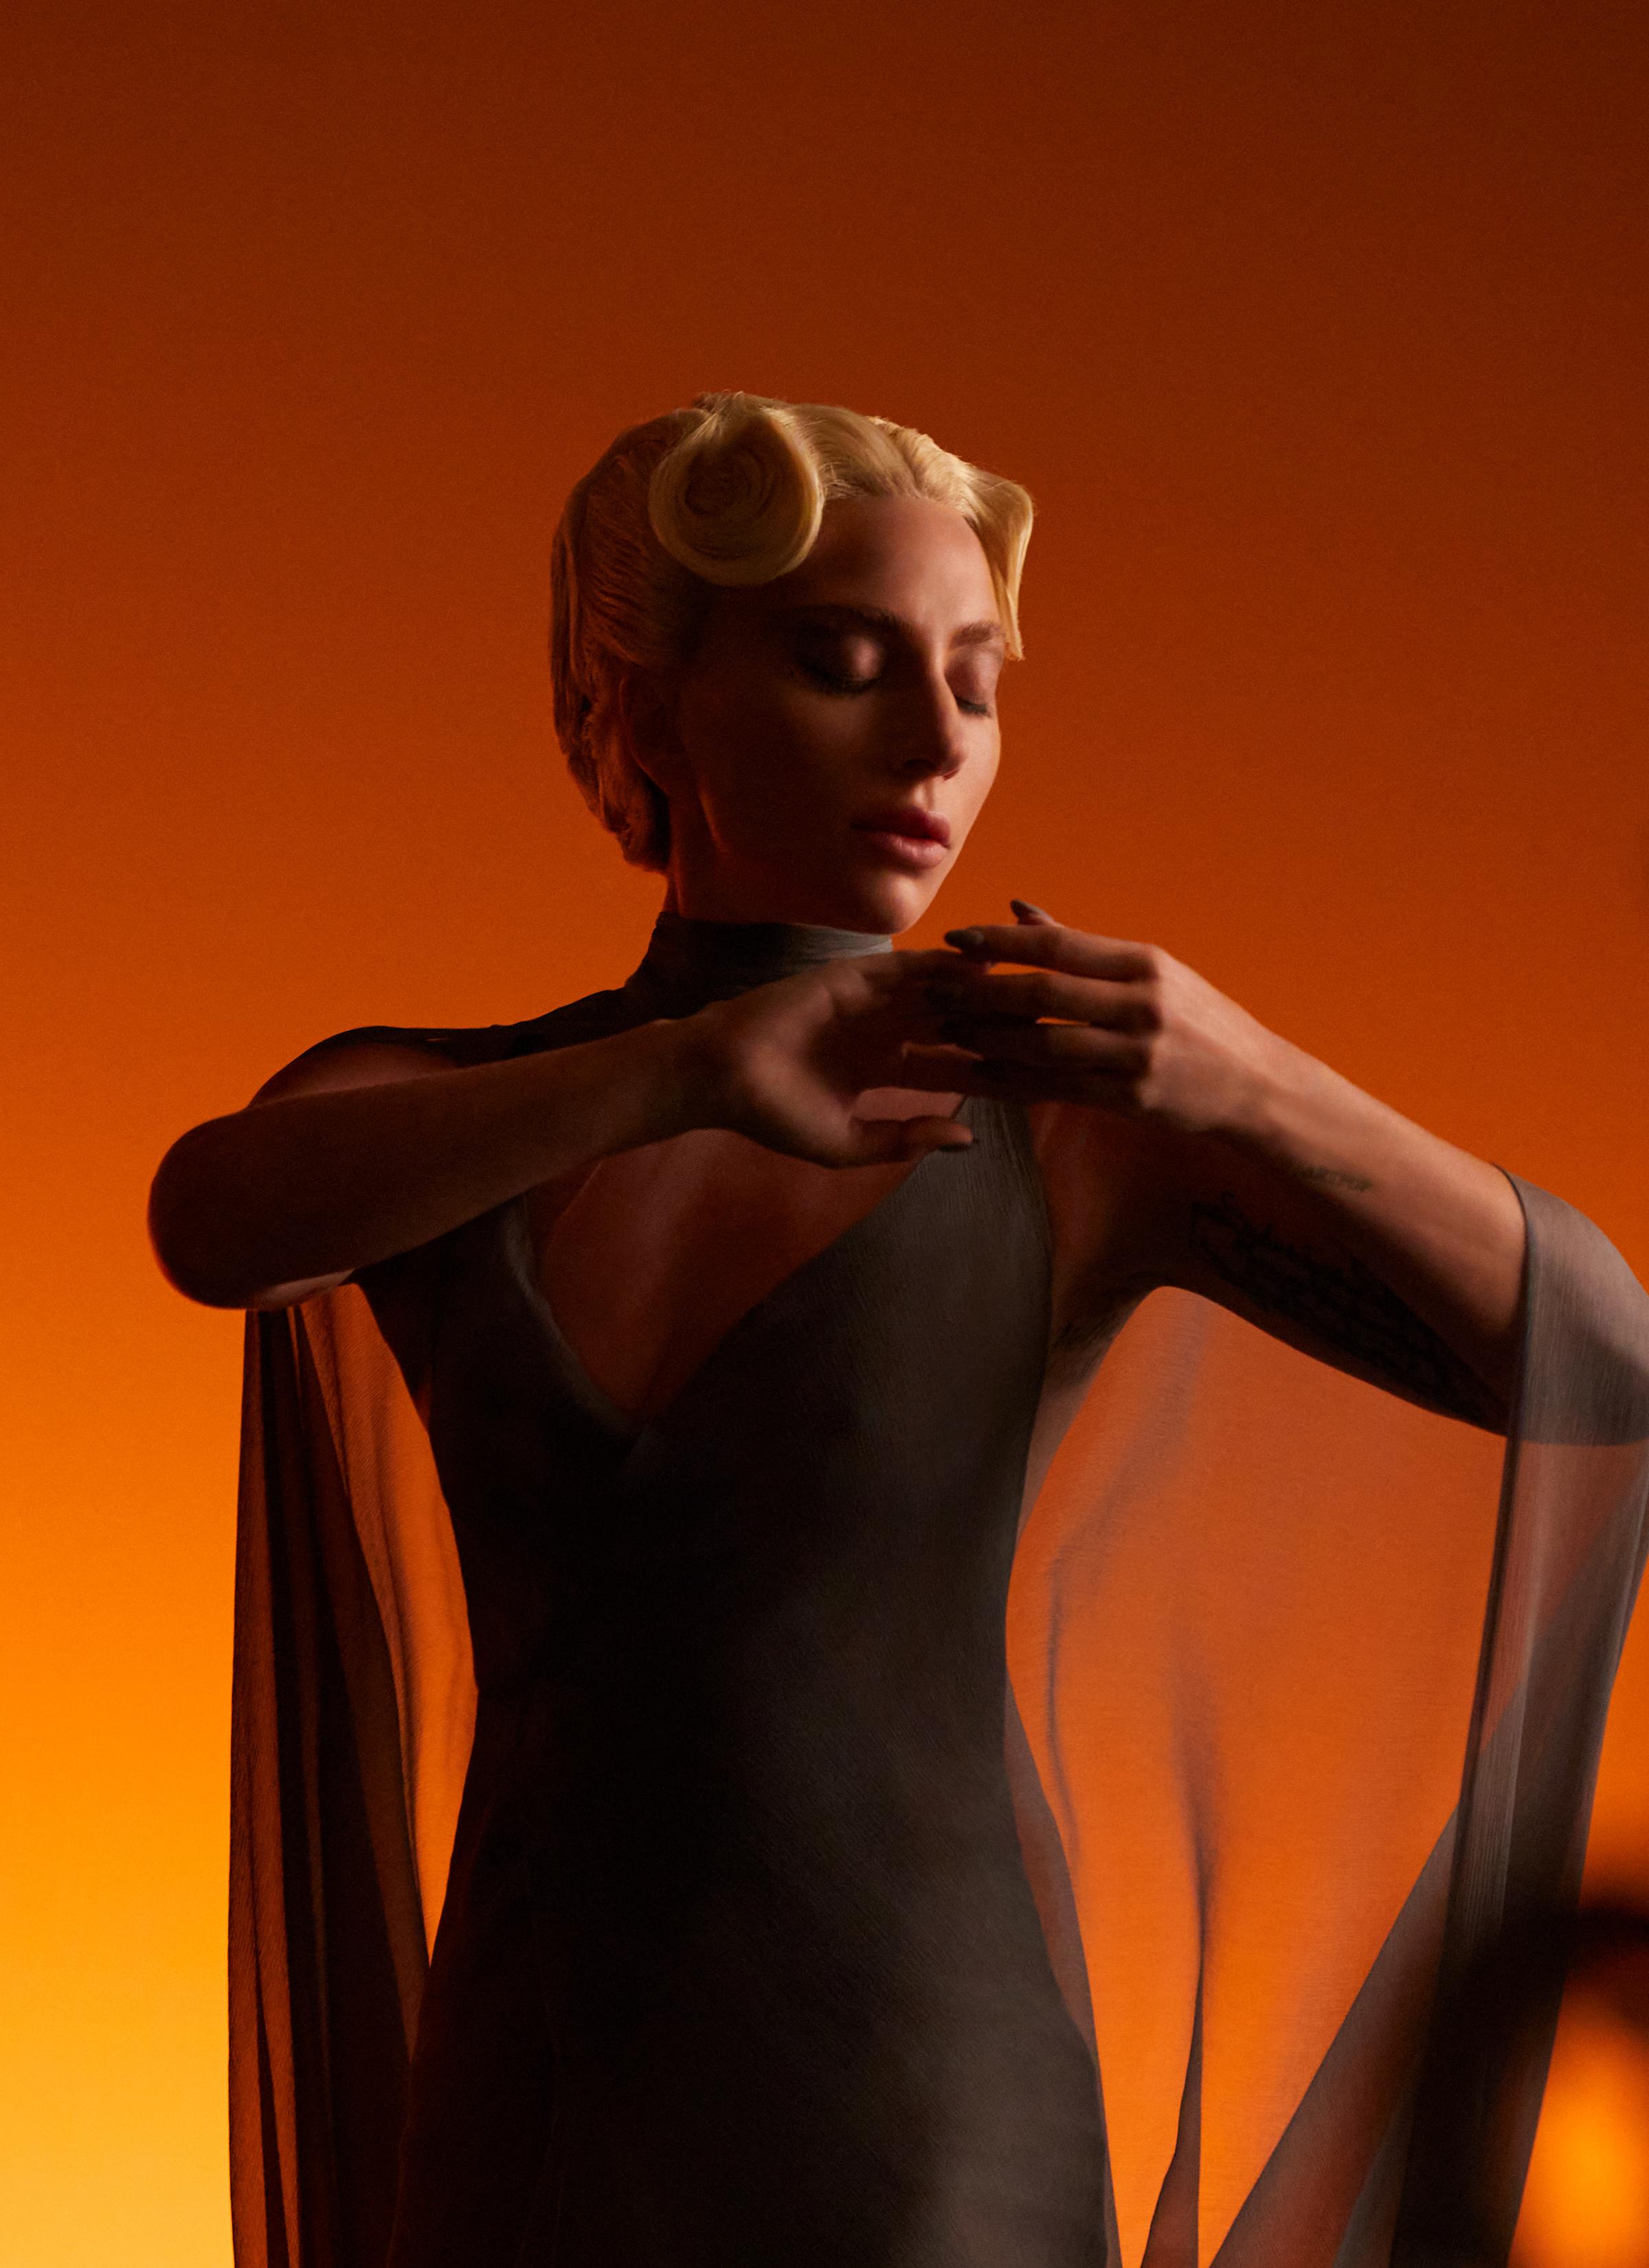 Clos19 on X: Dom Pérignon x Lady Gaga. One creative collaboration